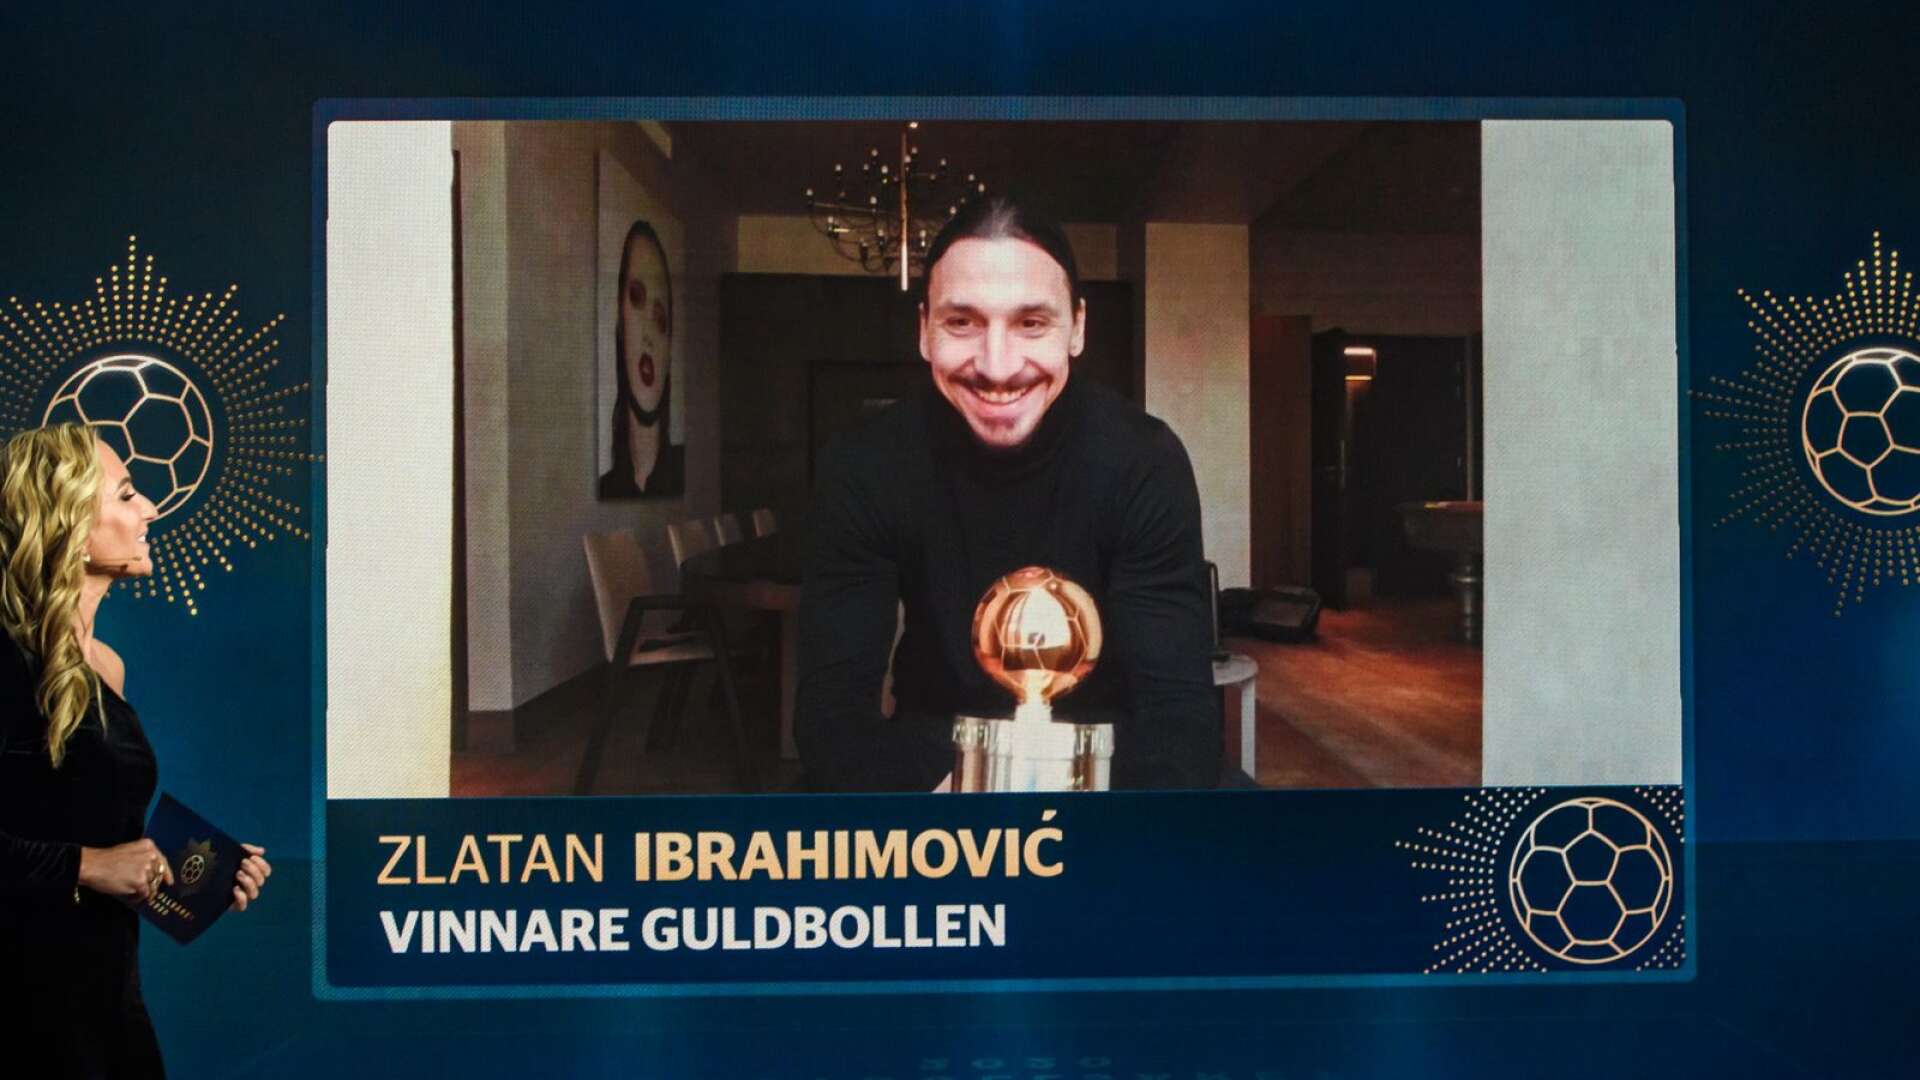 Zlatan Ibrahimovic fortsätter att fylla på i prisskåpet. Nu har anfallaren hela tolv guldbollar.